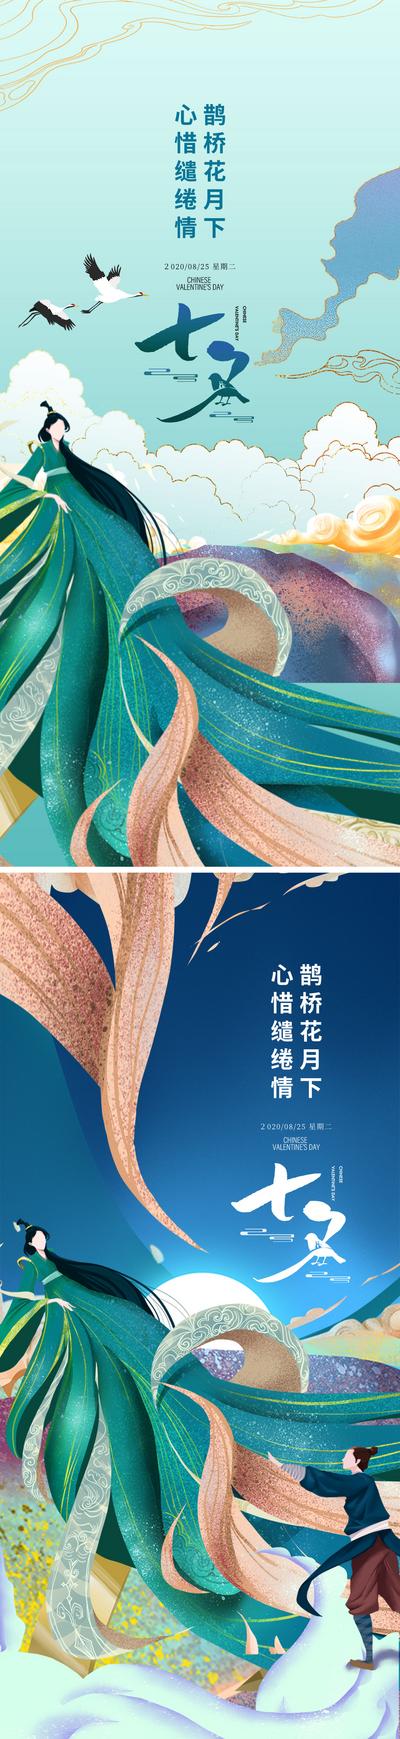 南门网 海报 七夕 情人节 中国传统节日 插画 手绘 牛郎 织女